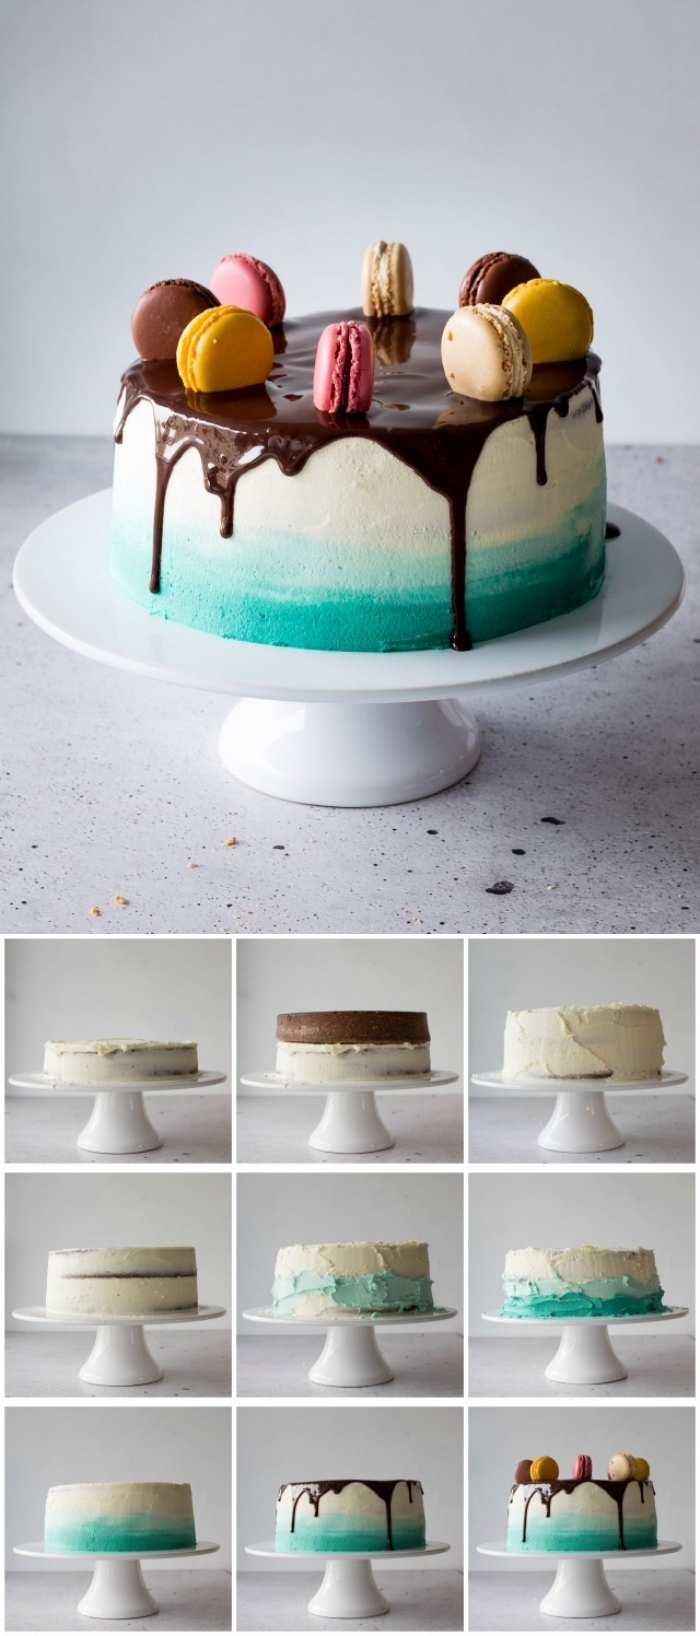 tuto pour décorer facilement un gâteau au nappage gateau en dégradé, ombre cake au glaçage coulant de chocolat